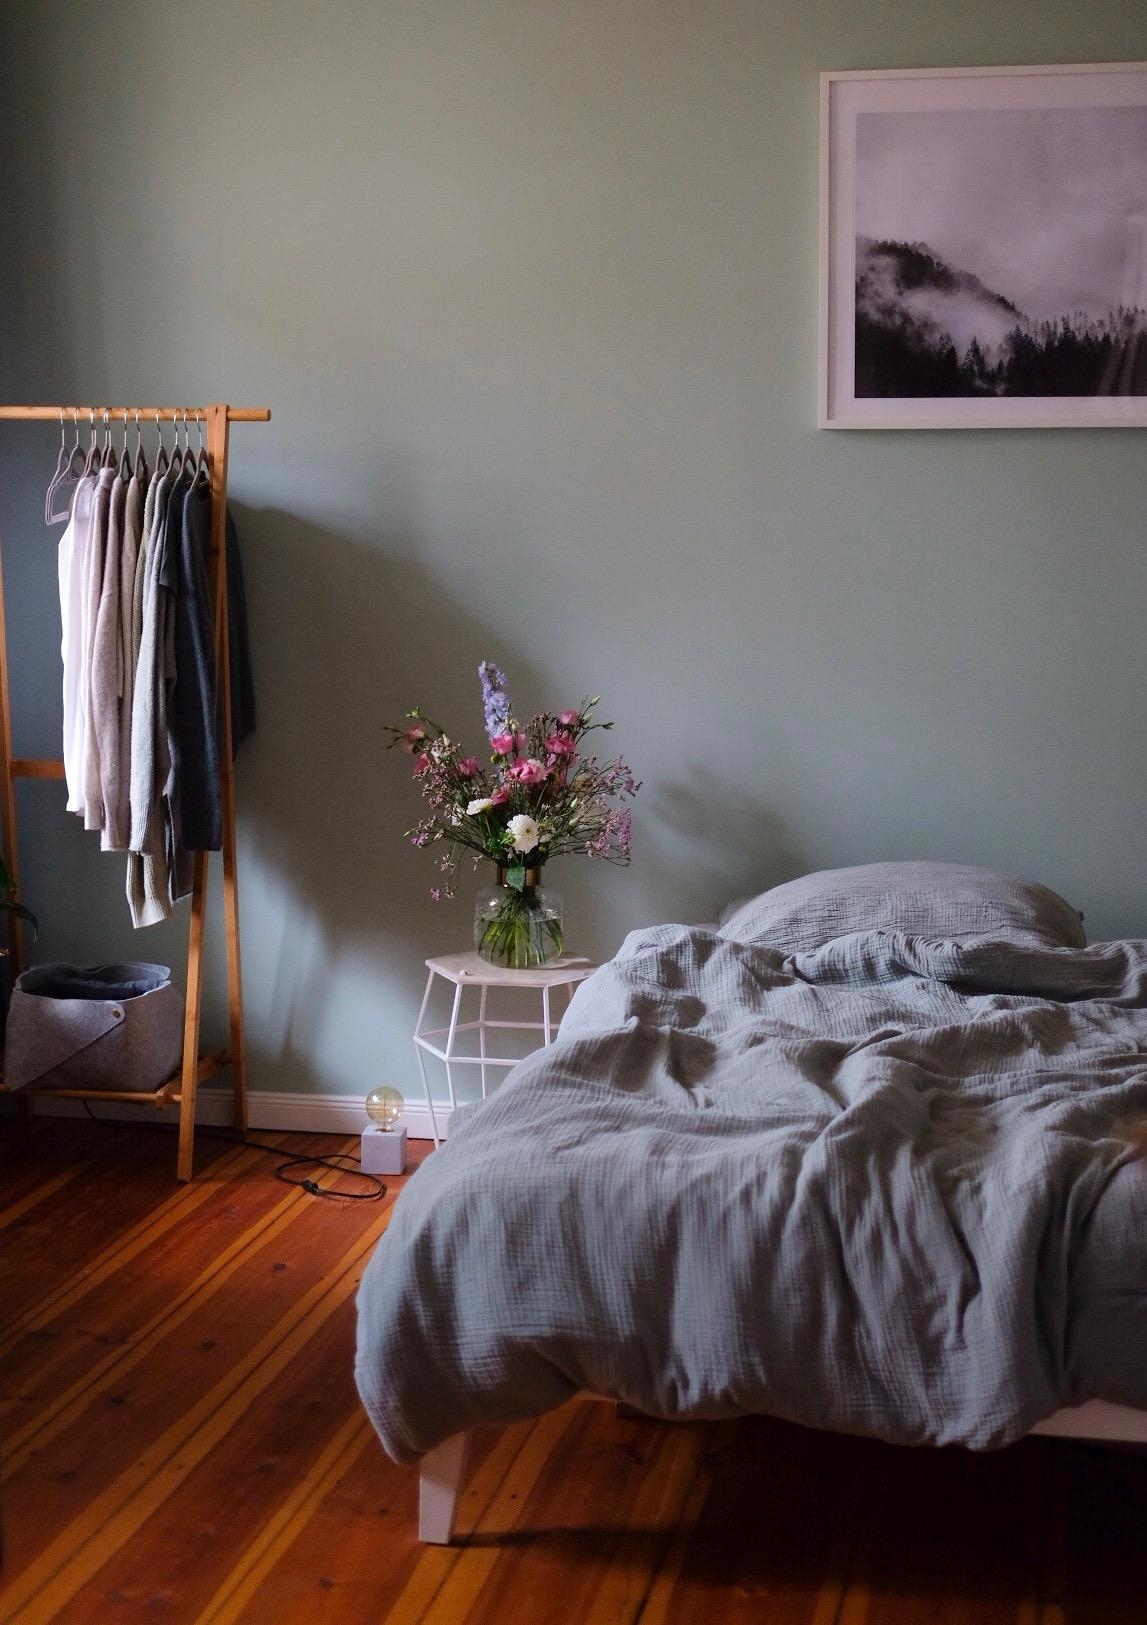 Schlafzimmer-Vibes

#altbau #schlafzimmer #interiorinspo #nordicdesign #einrichtungsideen